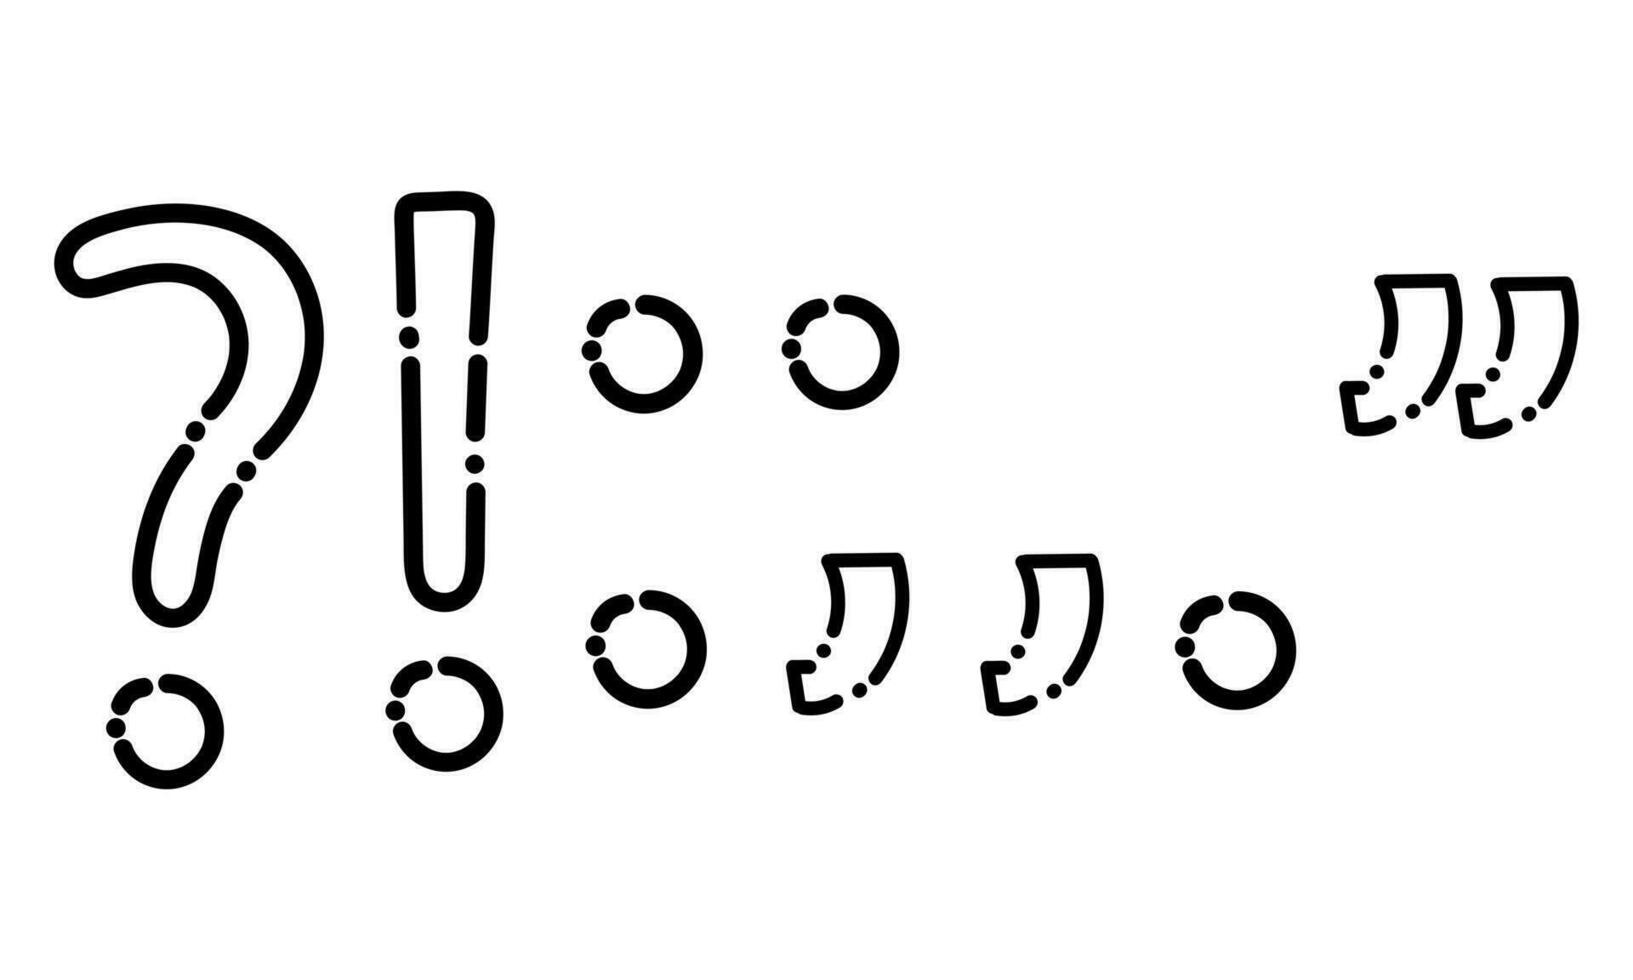 een verzameling van symbolen in stippel lijn stijl2 vector